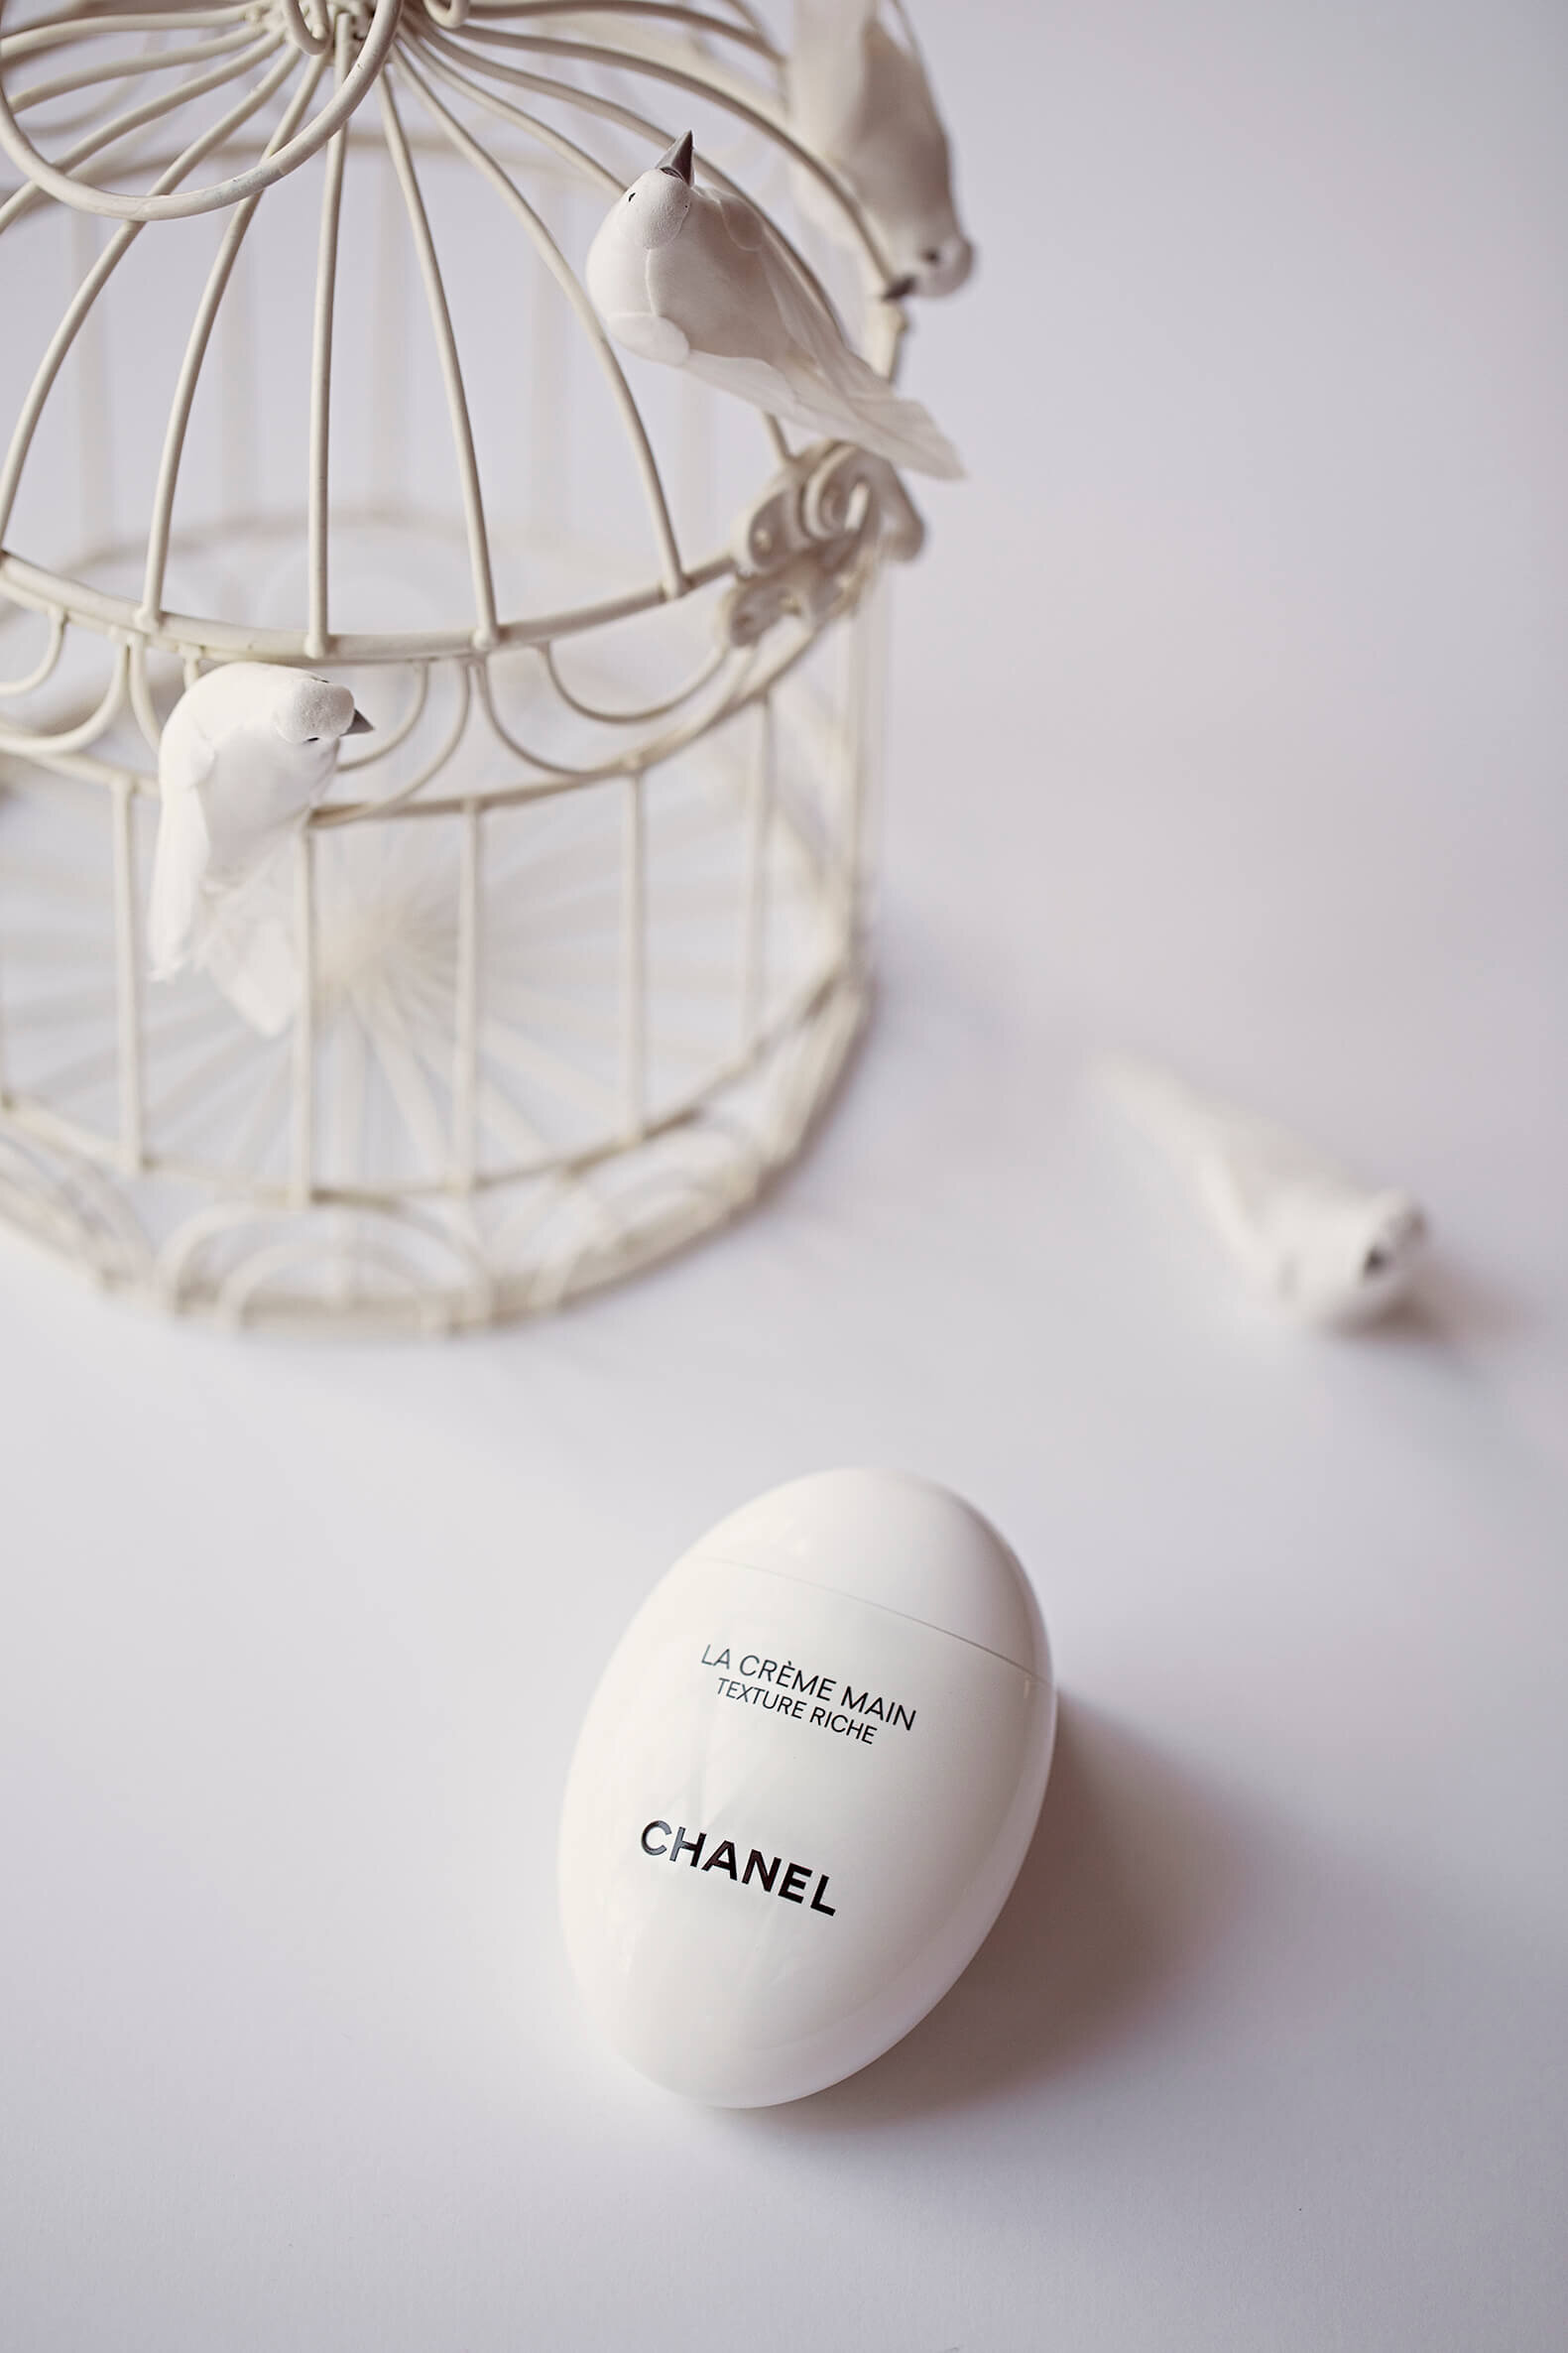 Chanel La Crème Main Texture Riche Review